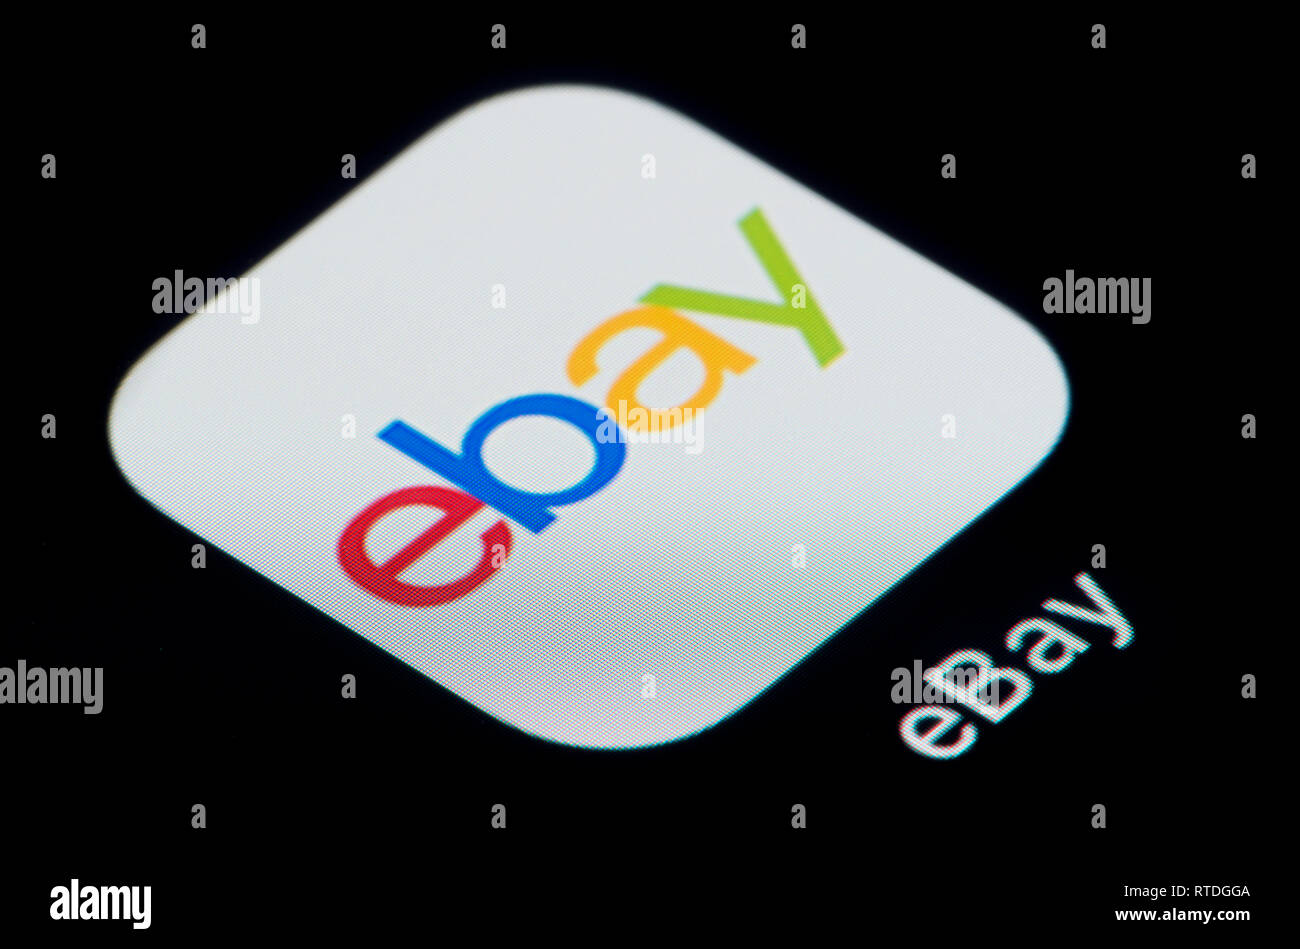 Un gros plan de l'icône de l'application d'Ebay, comme on le voit sur l'écran d'un téléphone intelligent (usage éditorial uniquement) Banque D'Images